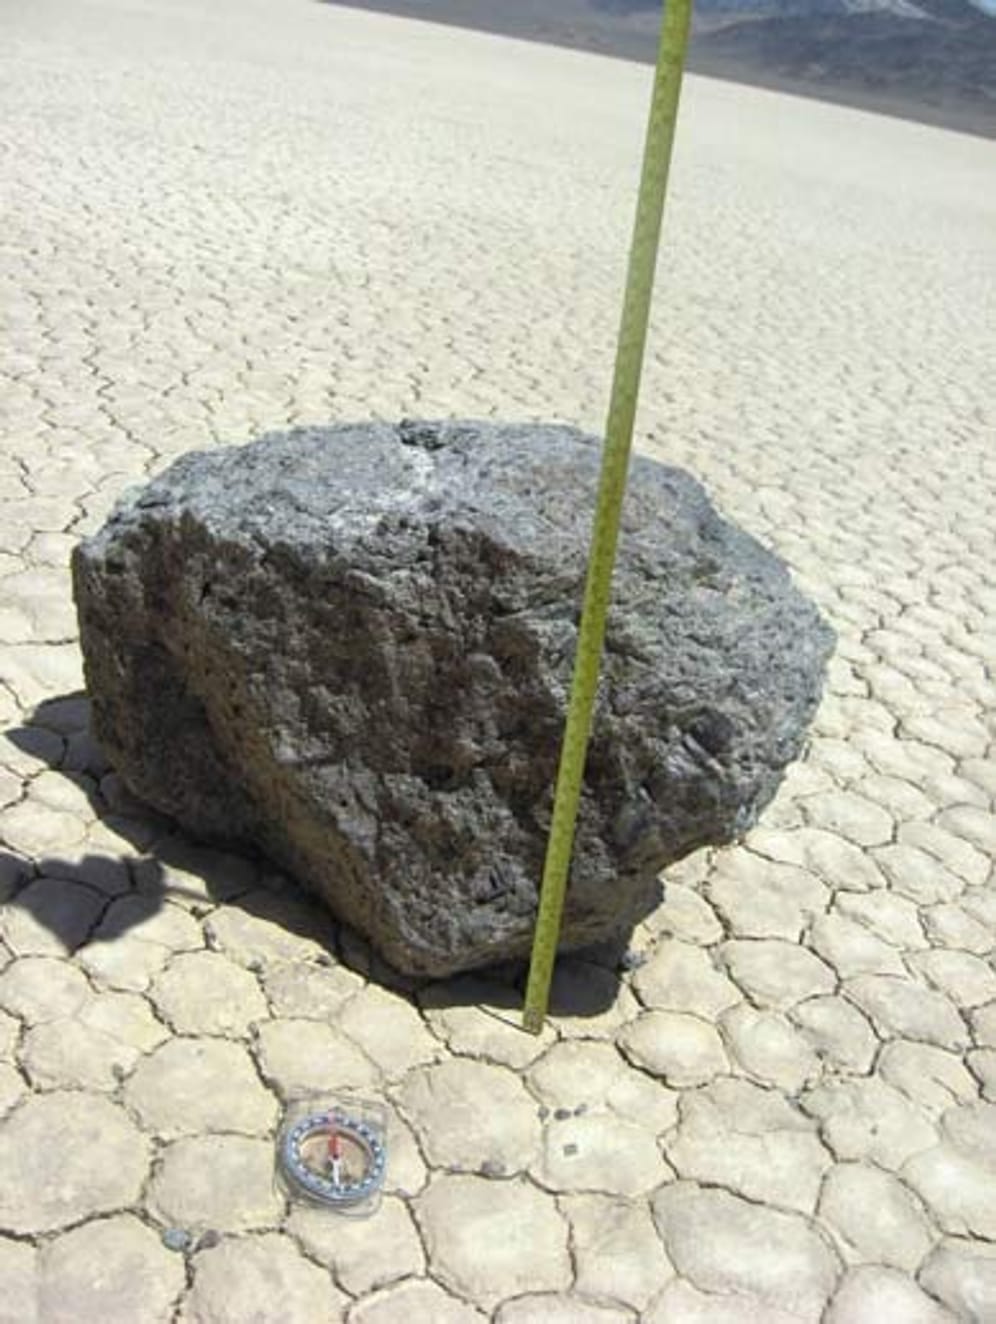 Vermessung: Die dicke Karen - so heißt einer der Steine - kommt mit ihren 320 Kilogramm nur langsam voran.